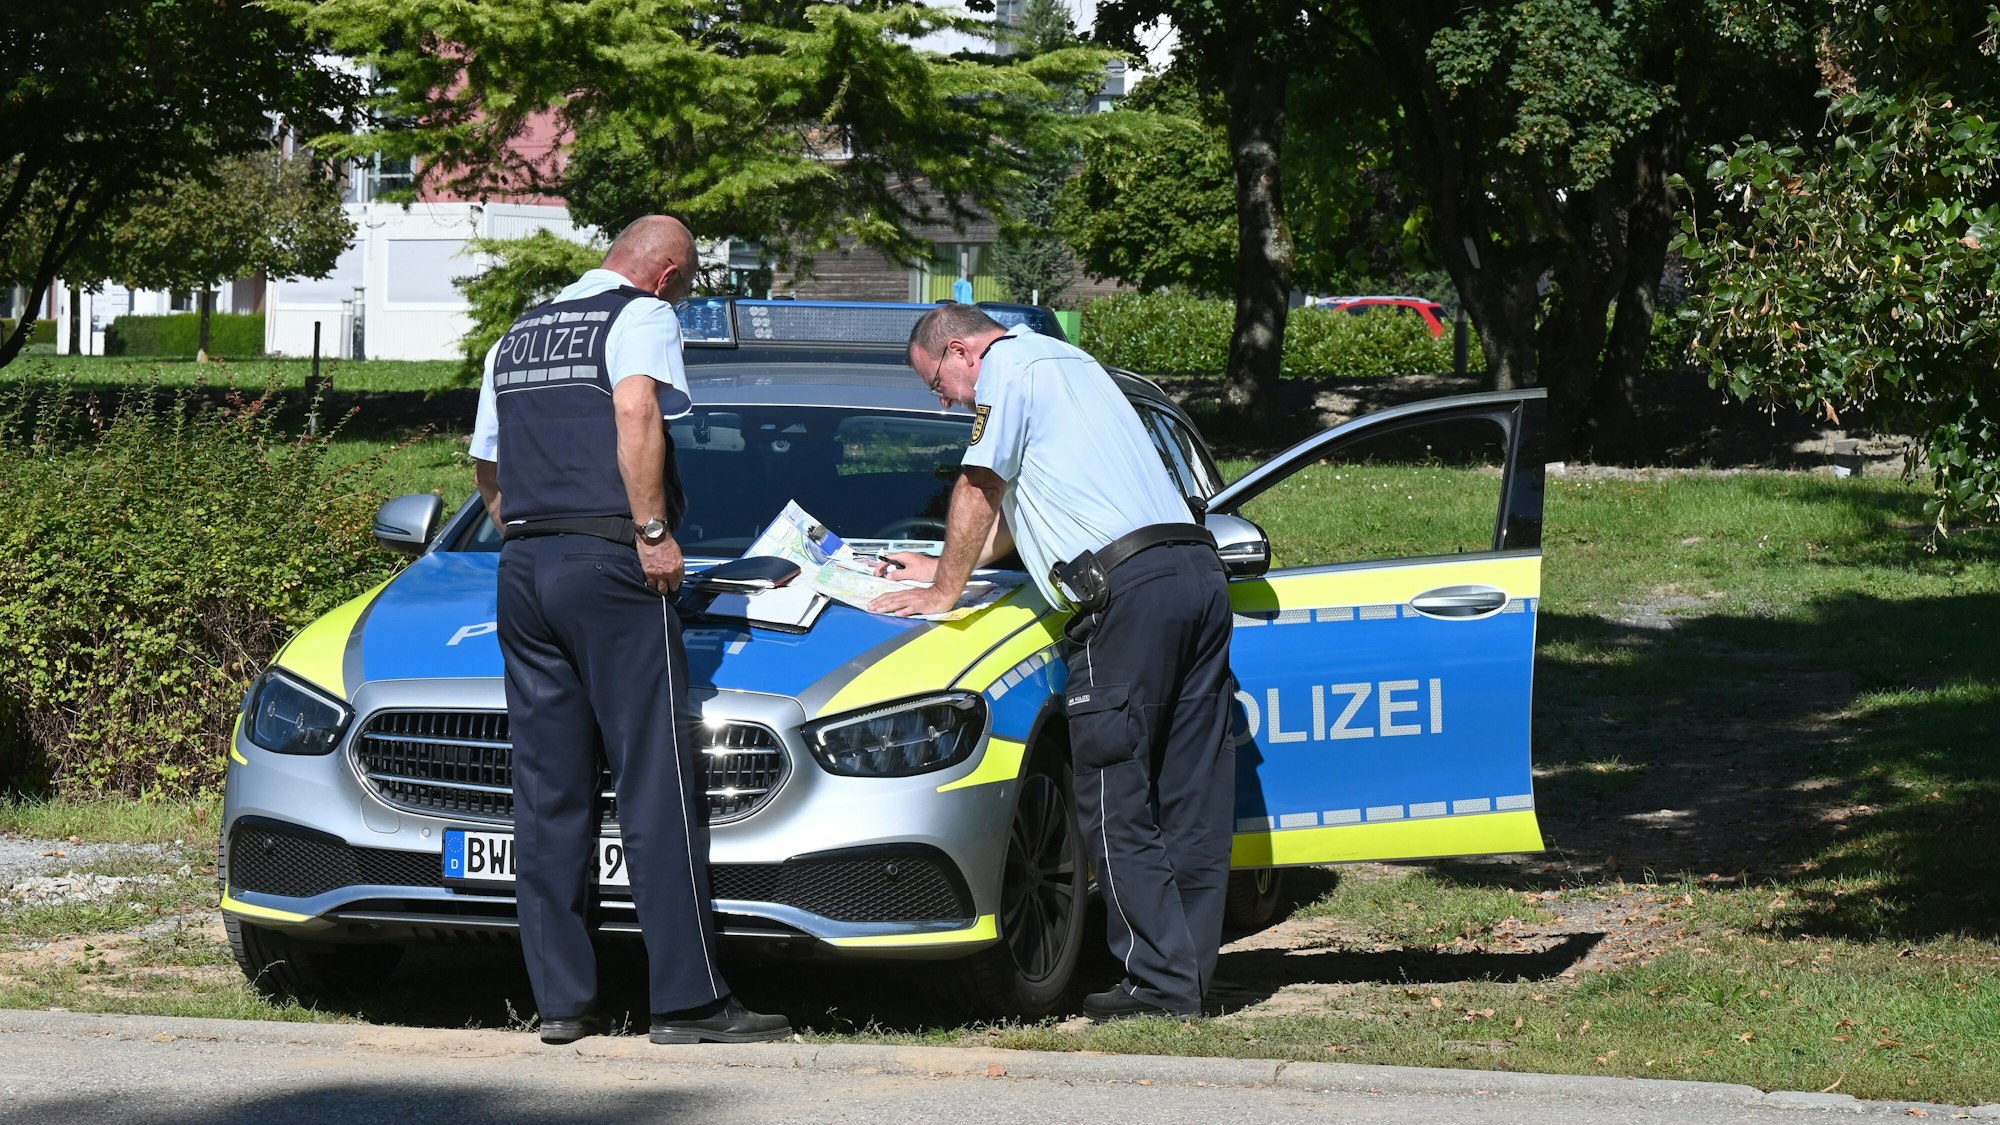 Nach einem erneuten Klinikausbruch aus einer Weinsberger Klinik musste die Polizei erneut anrücken.